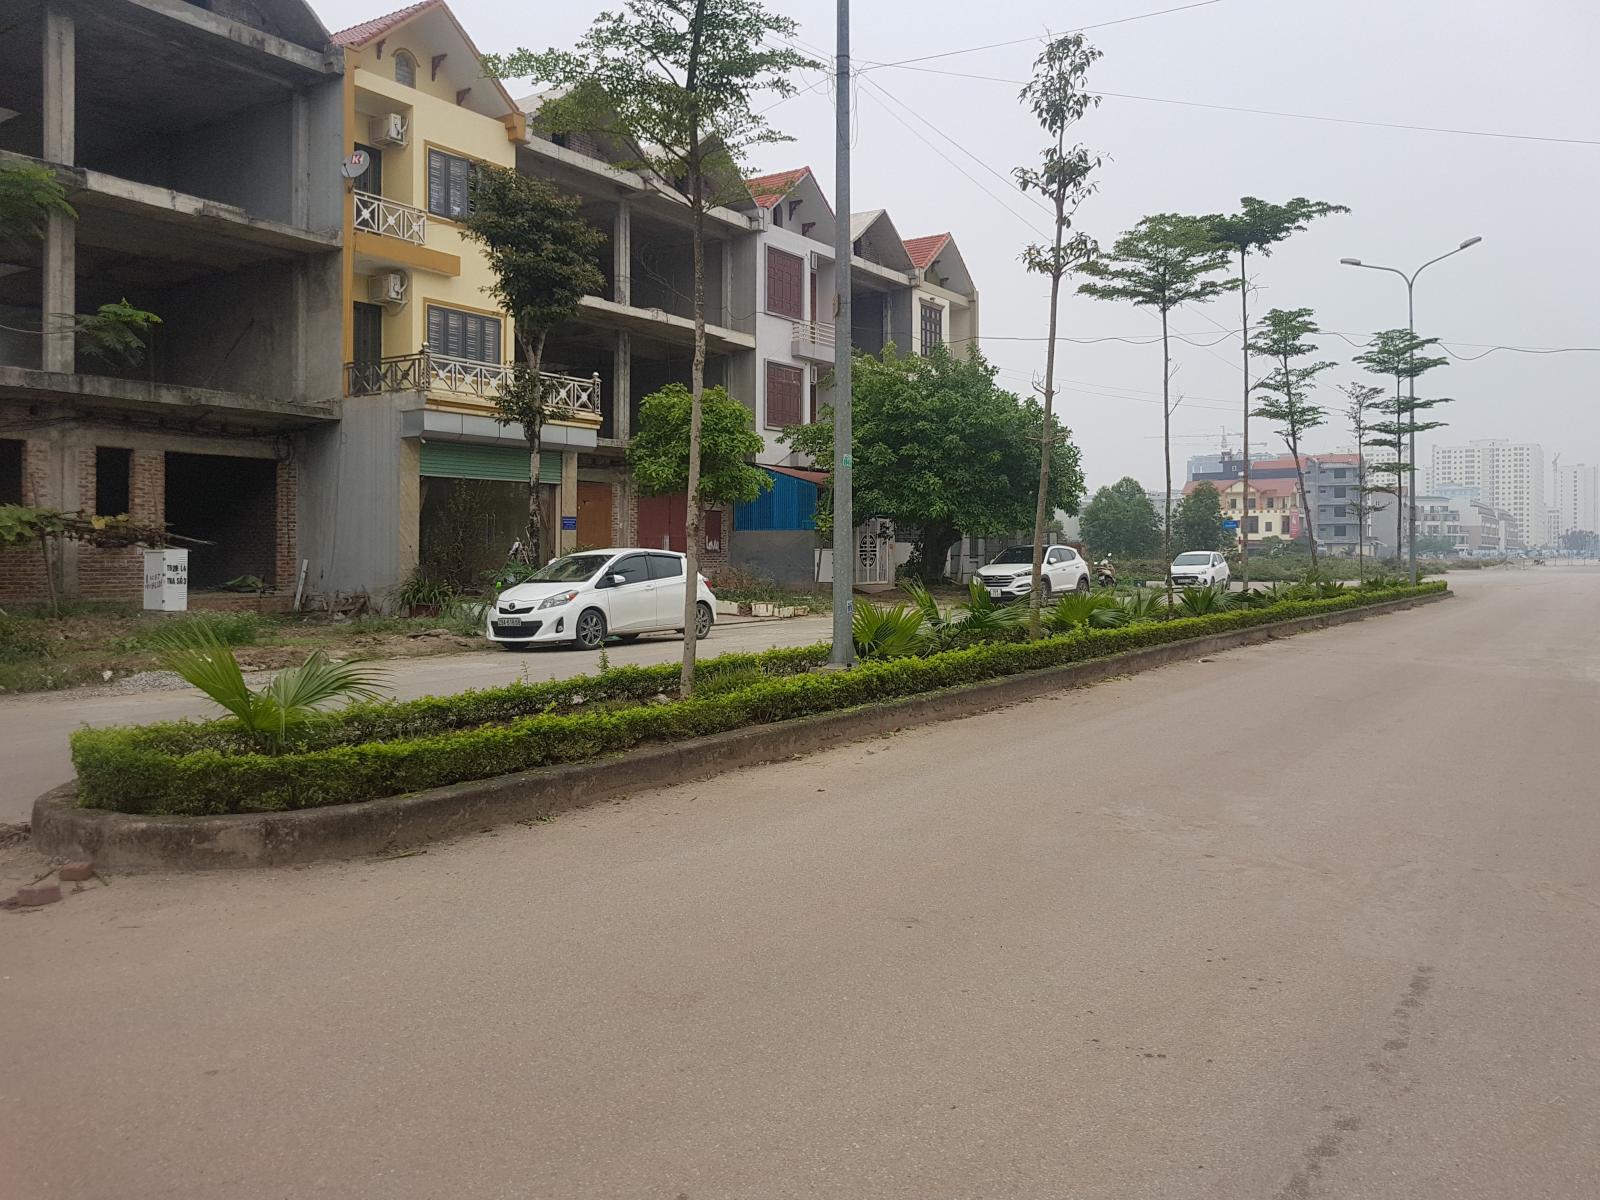 Bán nhà xây thô 3,5 tầng mặt đường Lý Anh Tông giao với trục tây nam thành phố Bắc Ninh